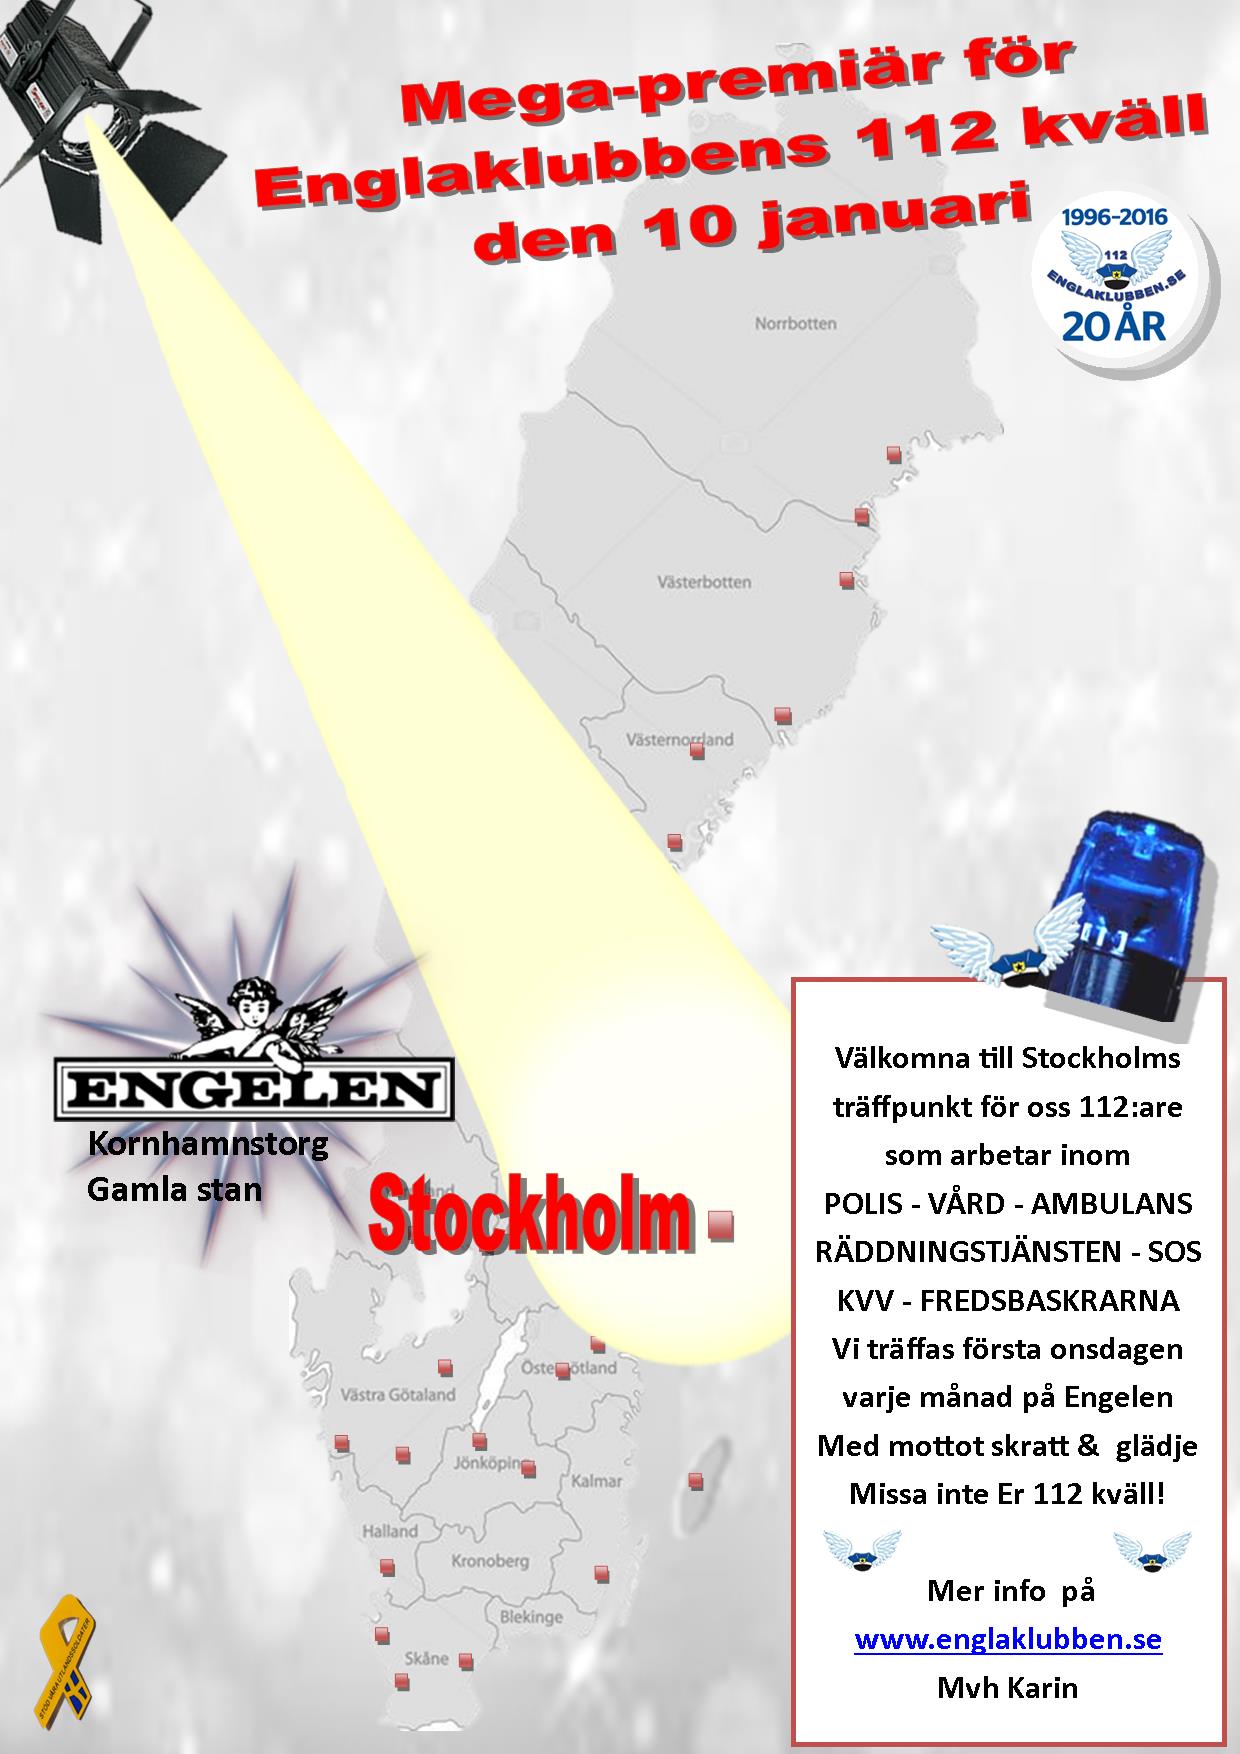 Stockholm Englaklubbens 112 kväll inbjudan